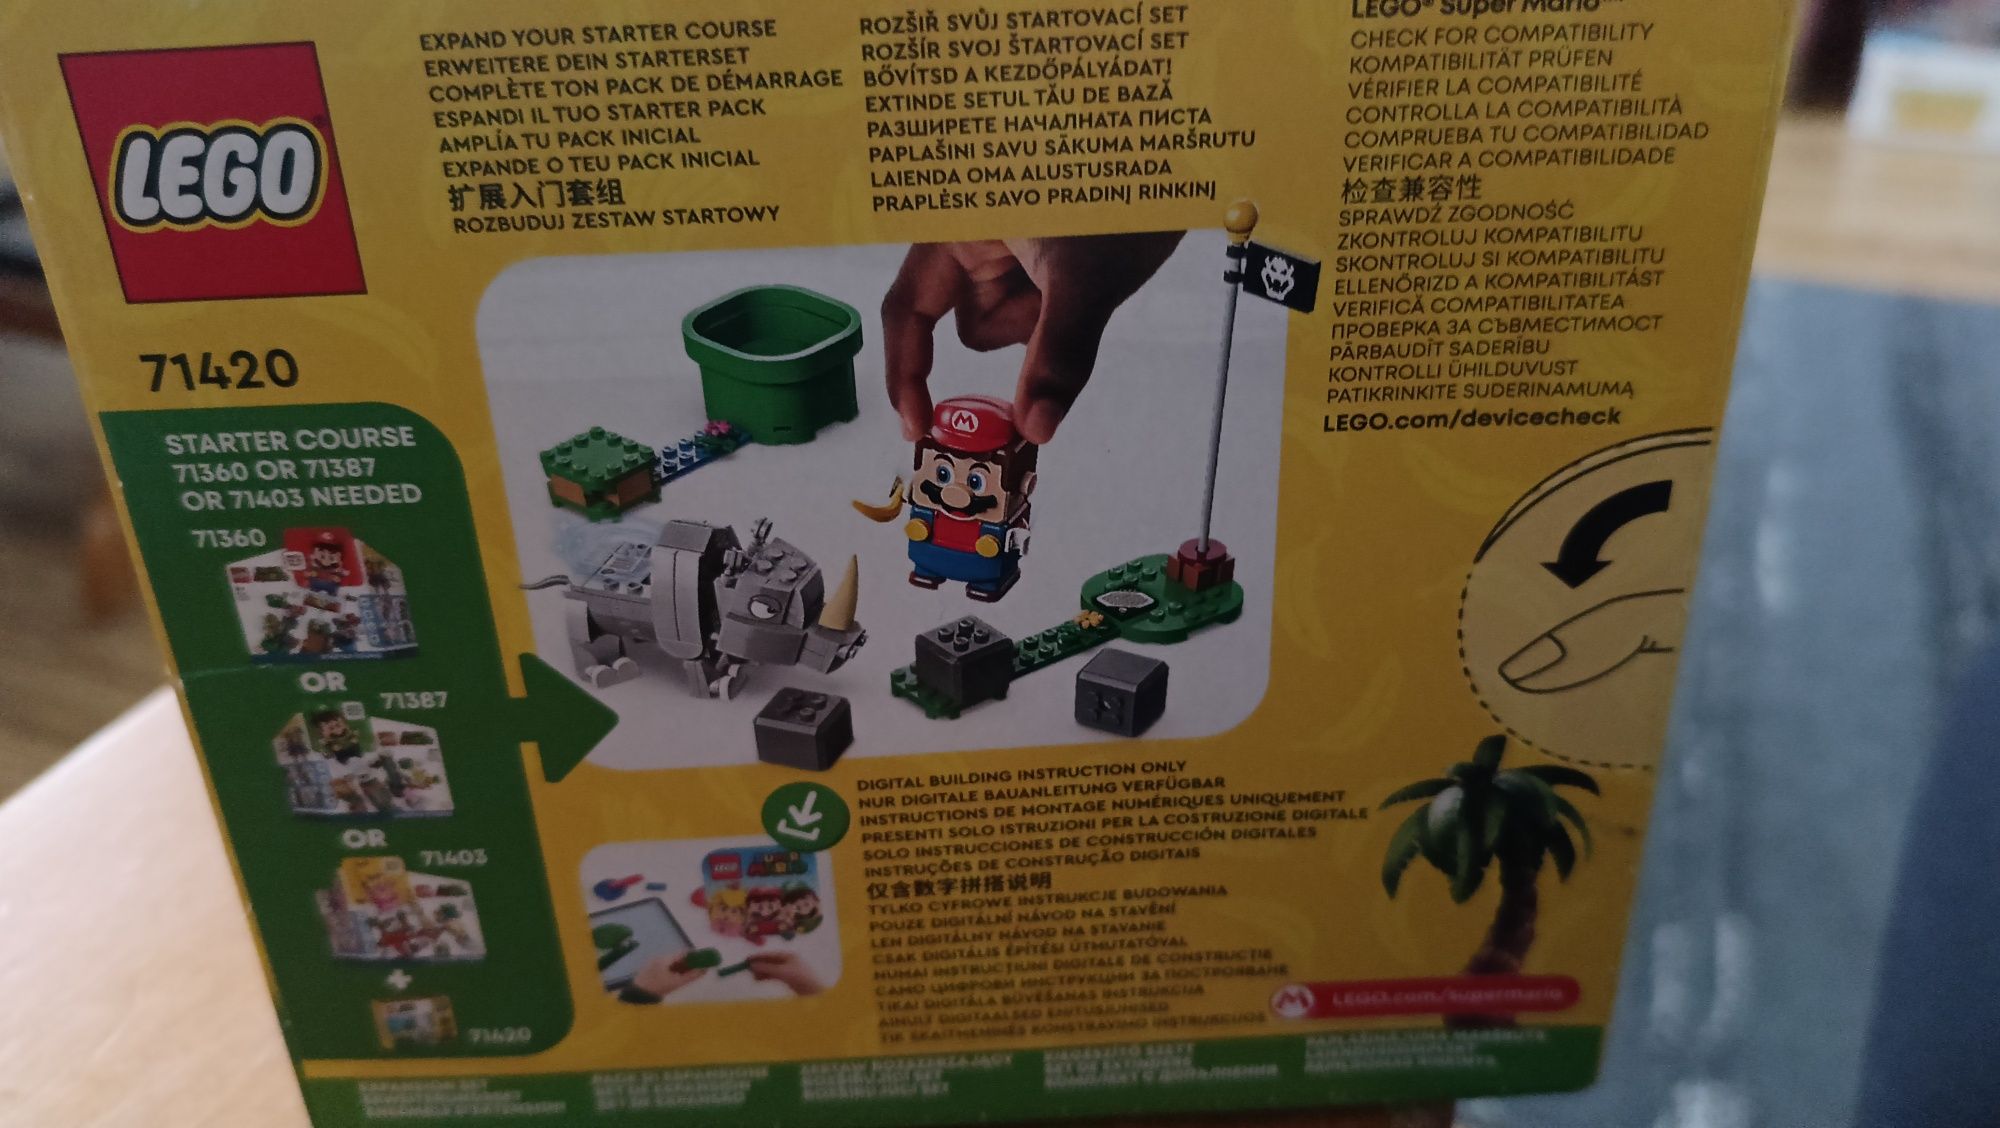 LEGO Super Mario z zestawem dodatkowym Rambi  (71420